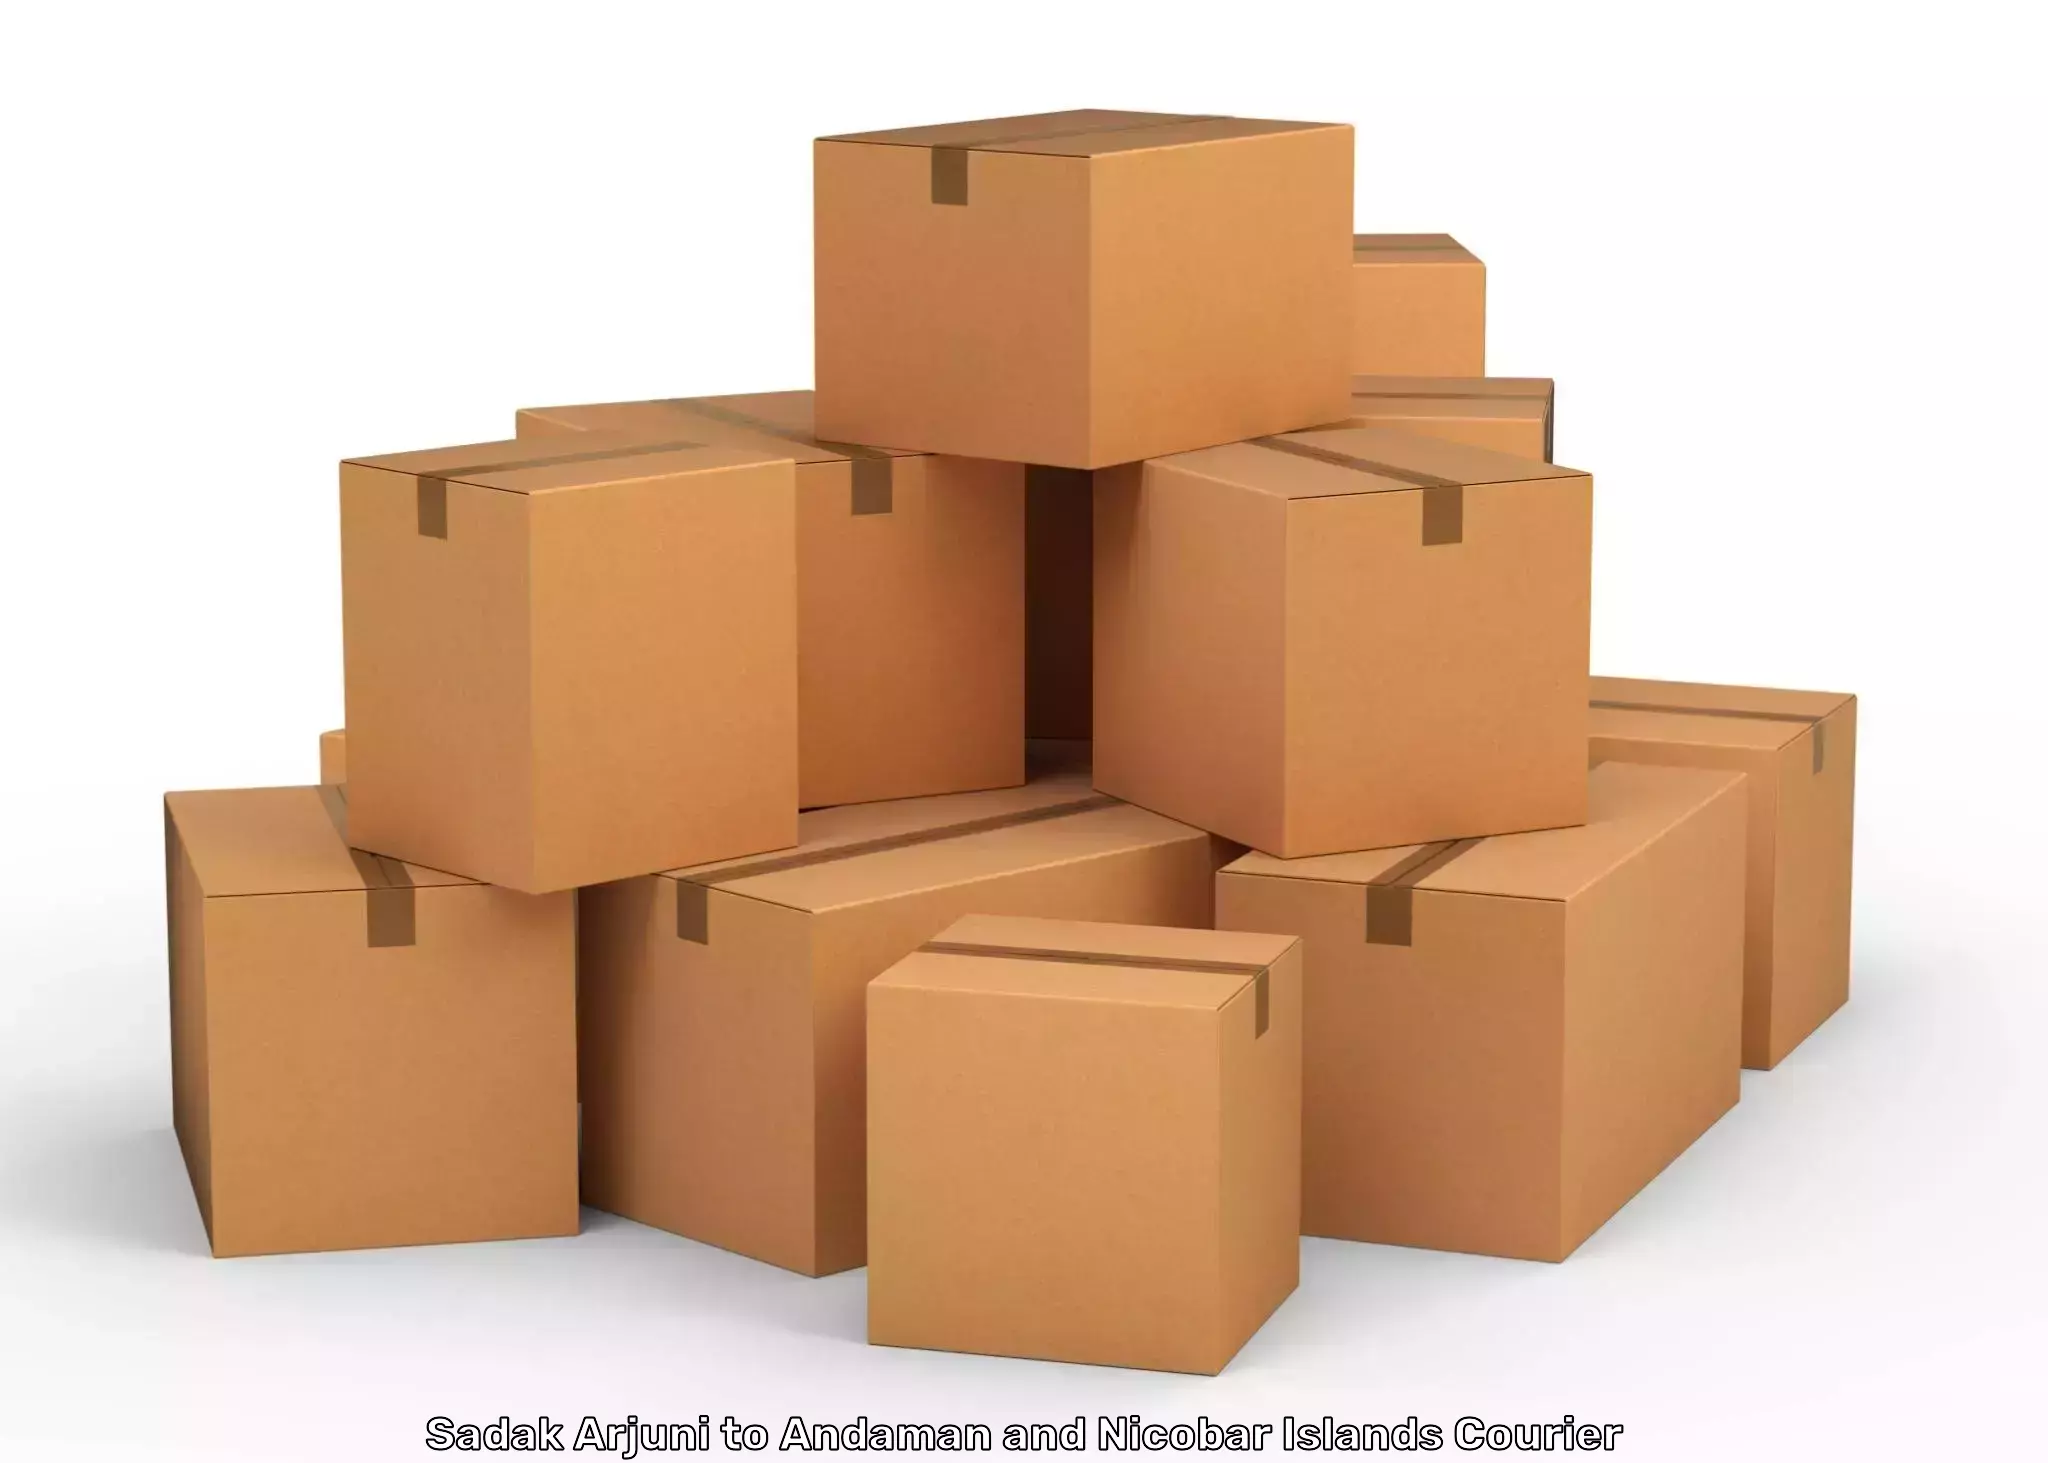 Heavy parcel delivery Sadak Arjuni to Andaman and Nicobar Islands